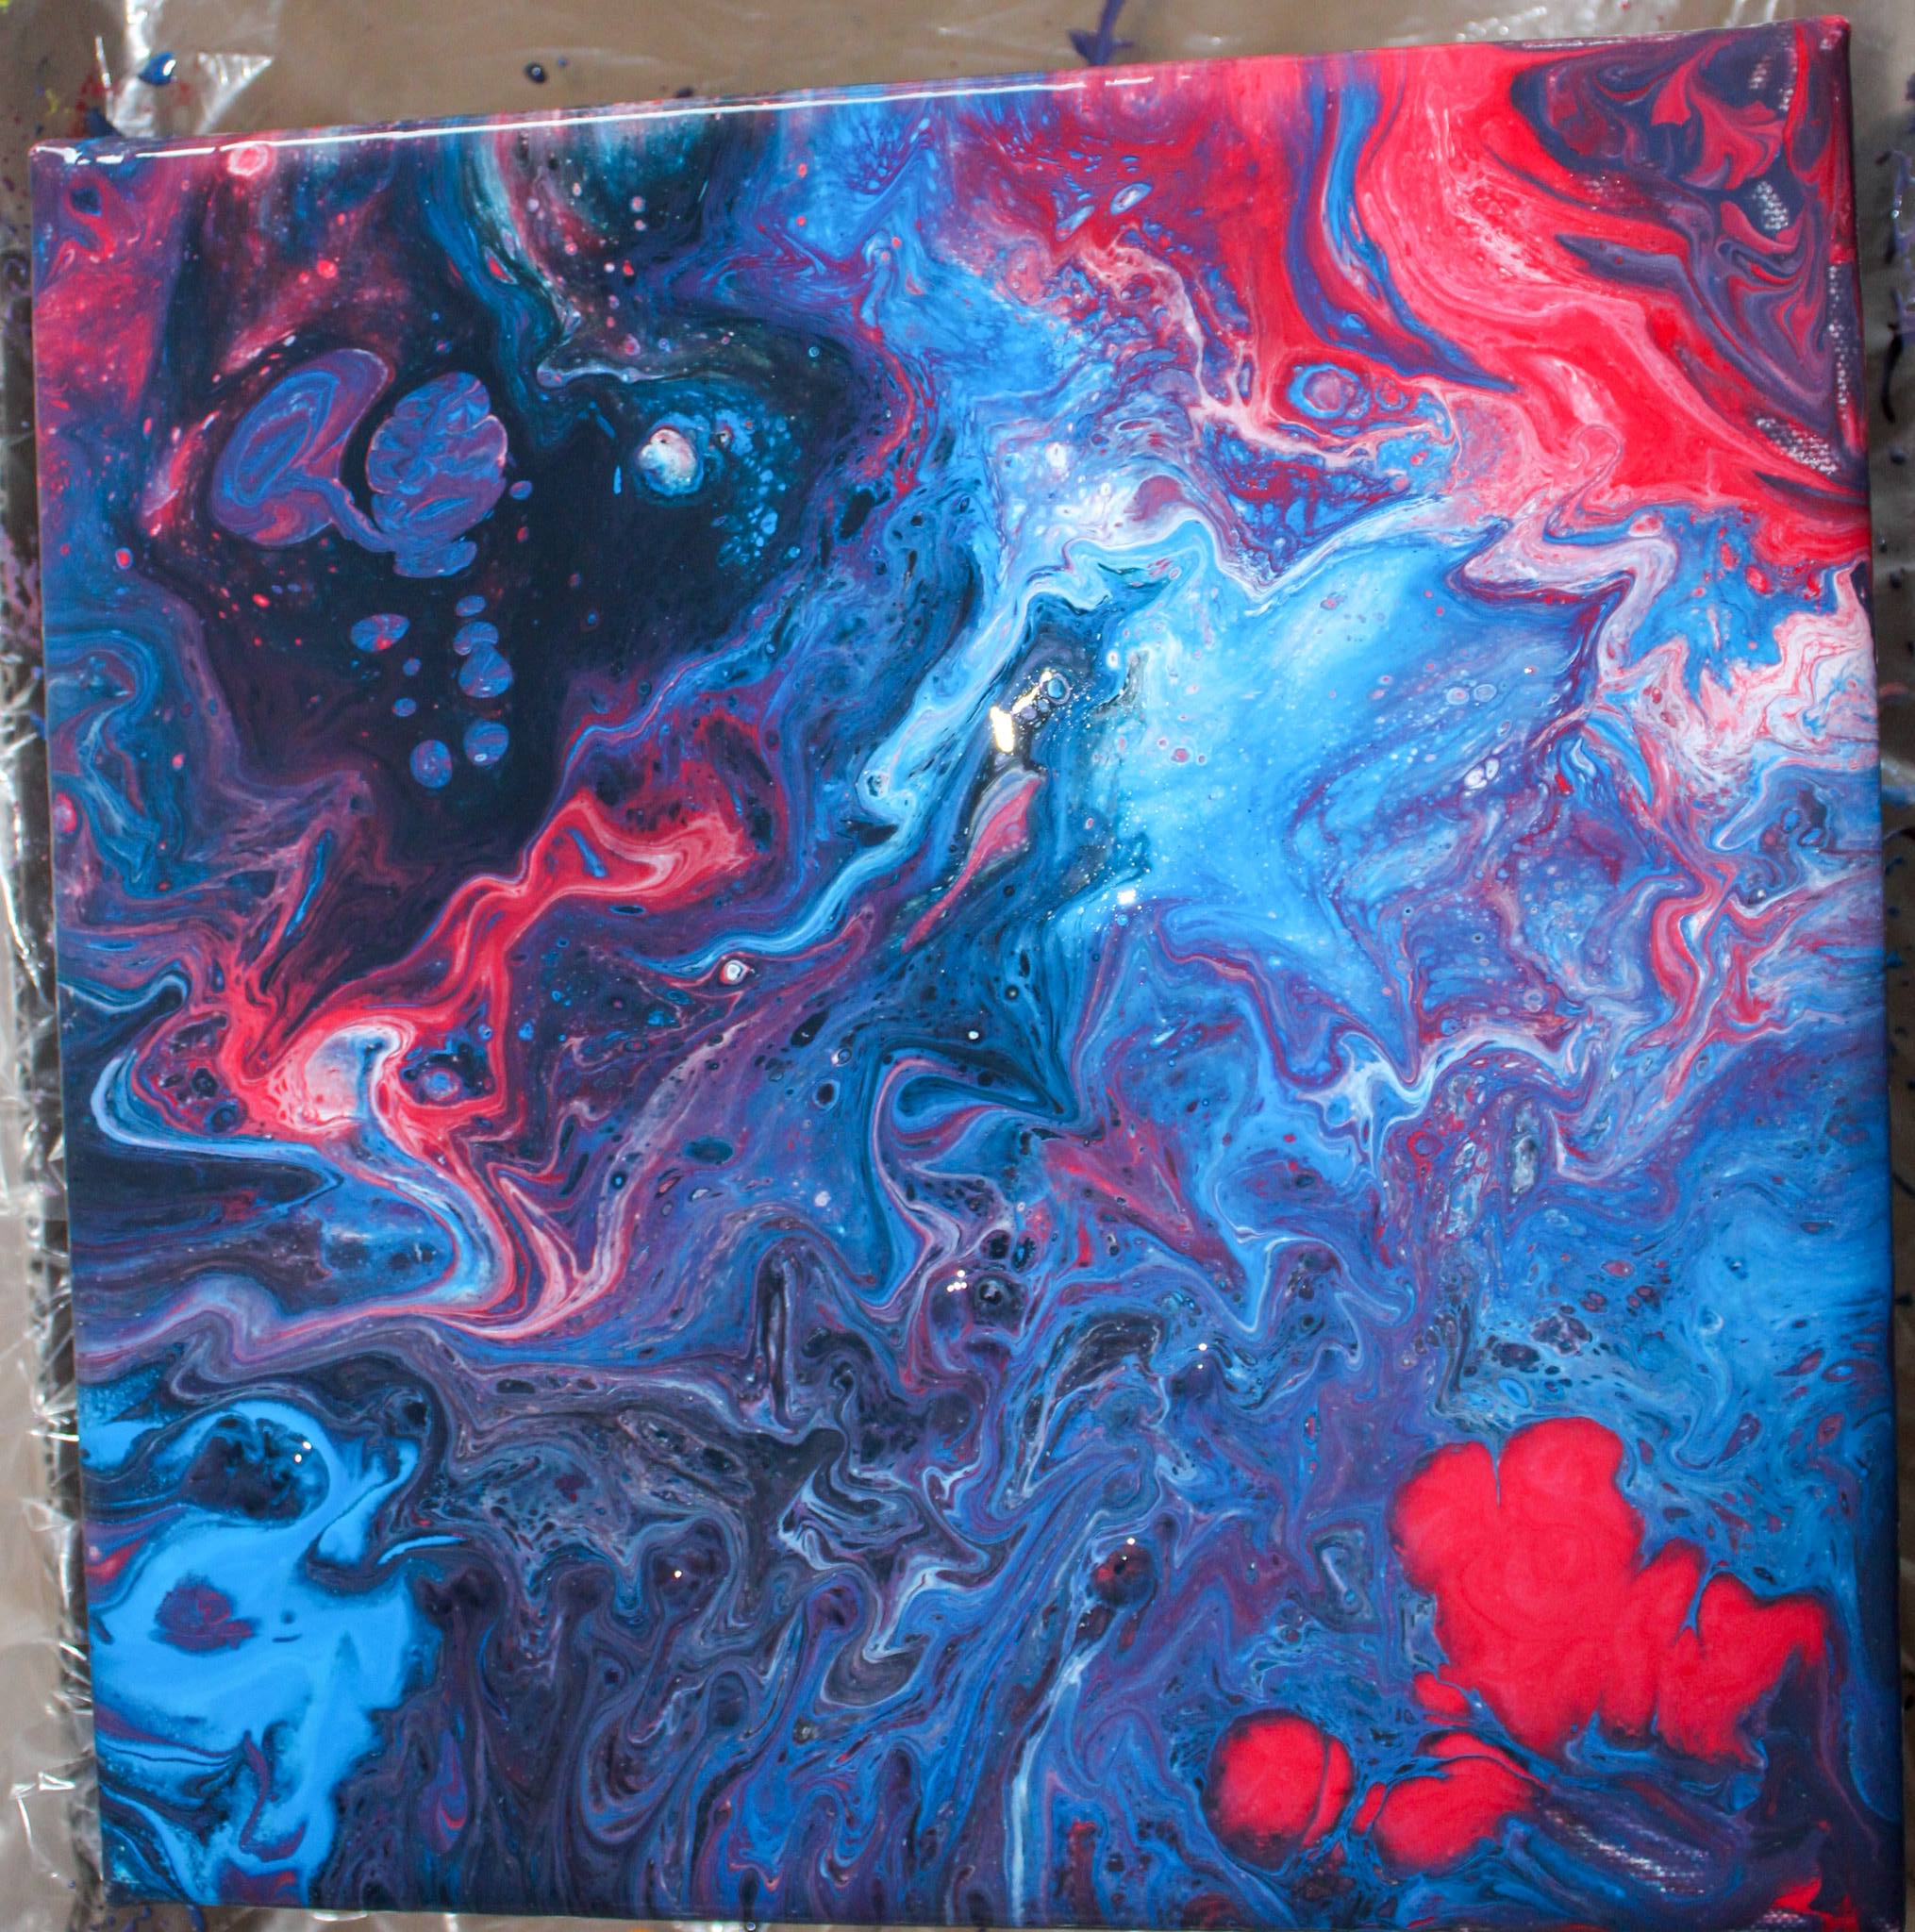 Acrylmalerei. Blaue, rote, lilane und schwarze Farben, die sich miteinander vermischen.